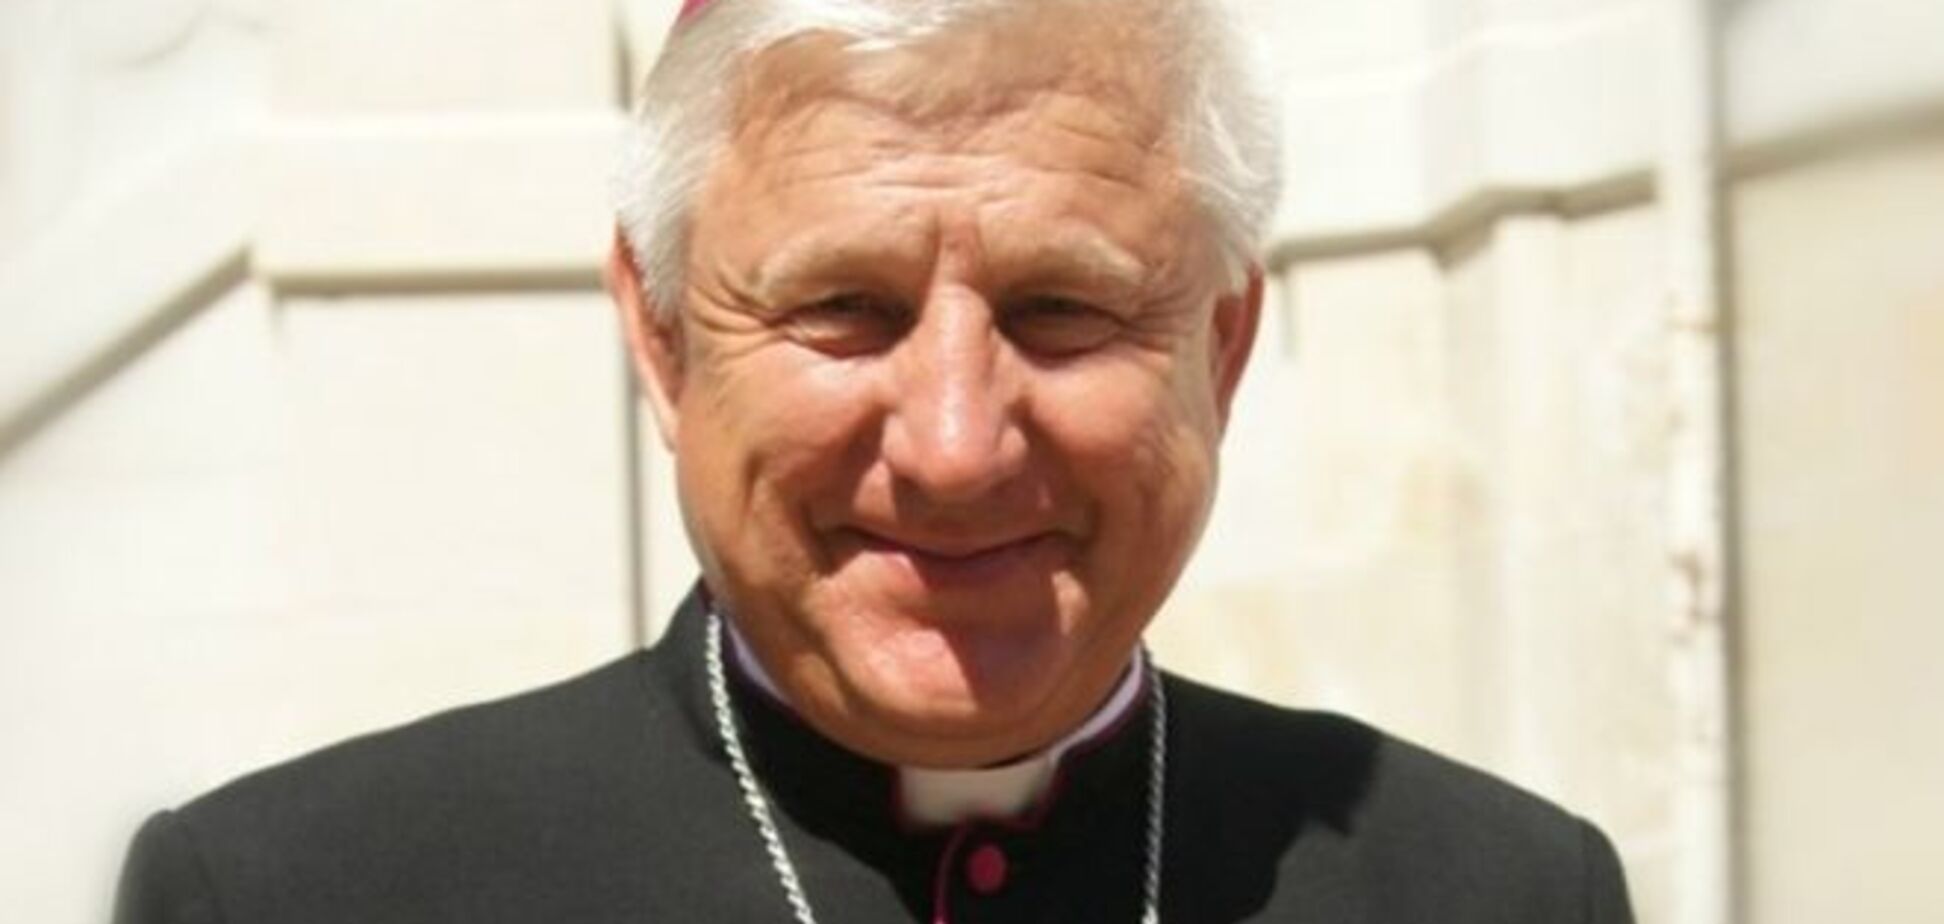 Епископ не верит, что Папа Франциск изменит 'дьявольскую натуру' Путина